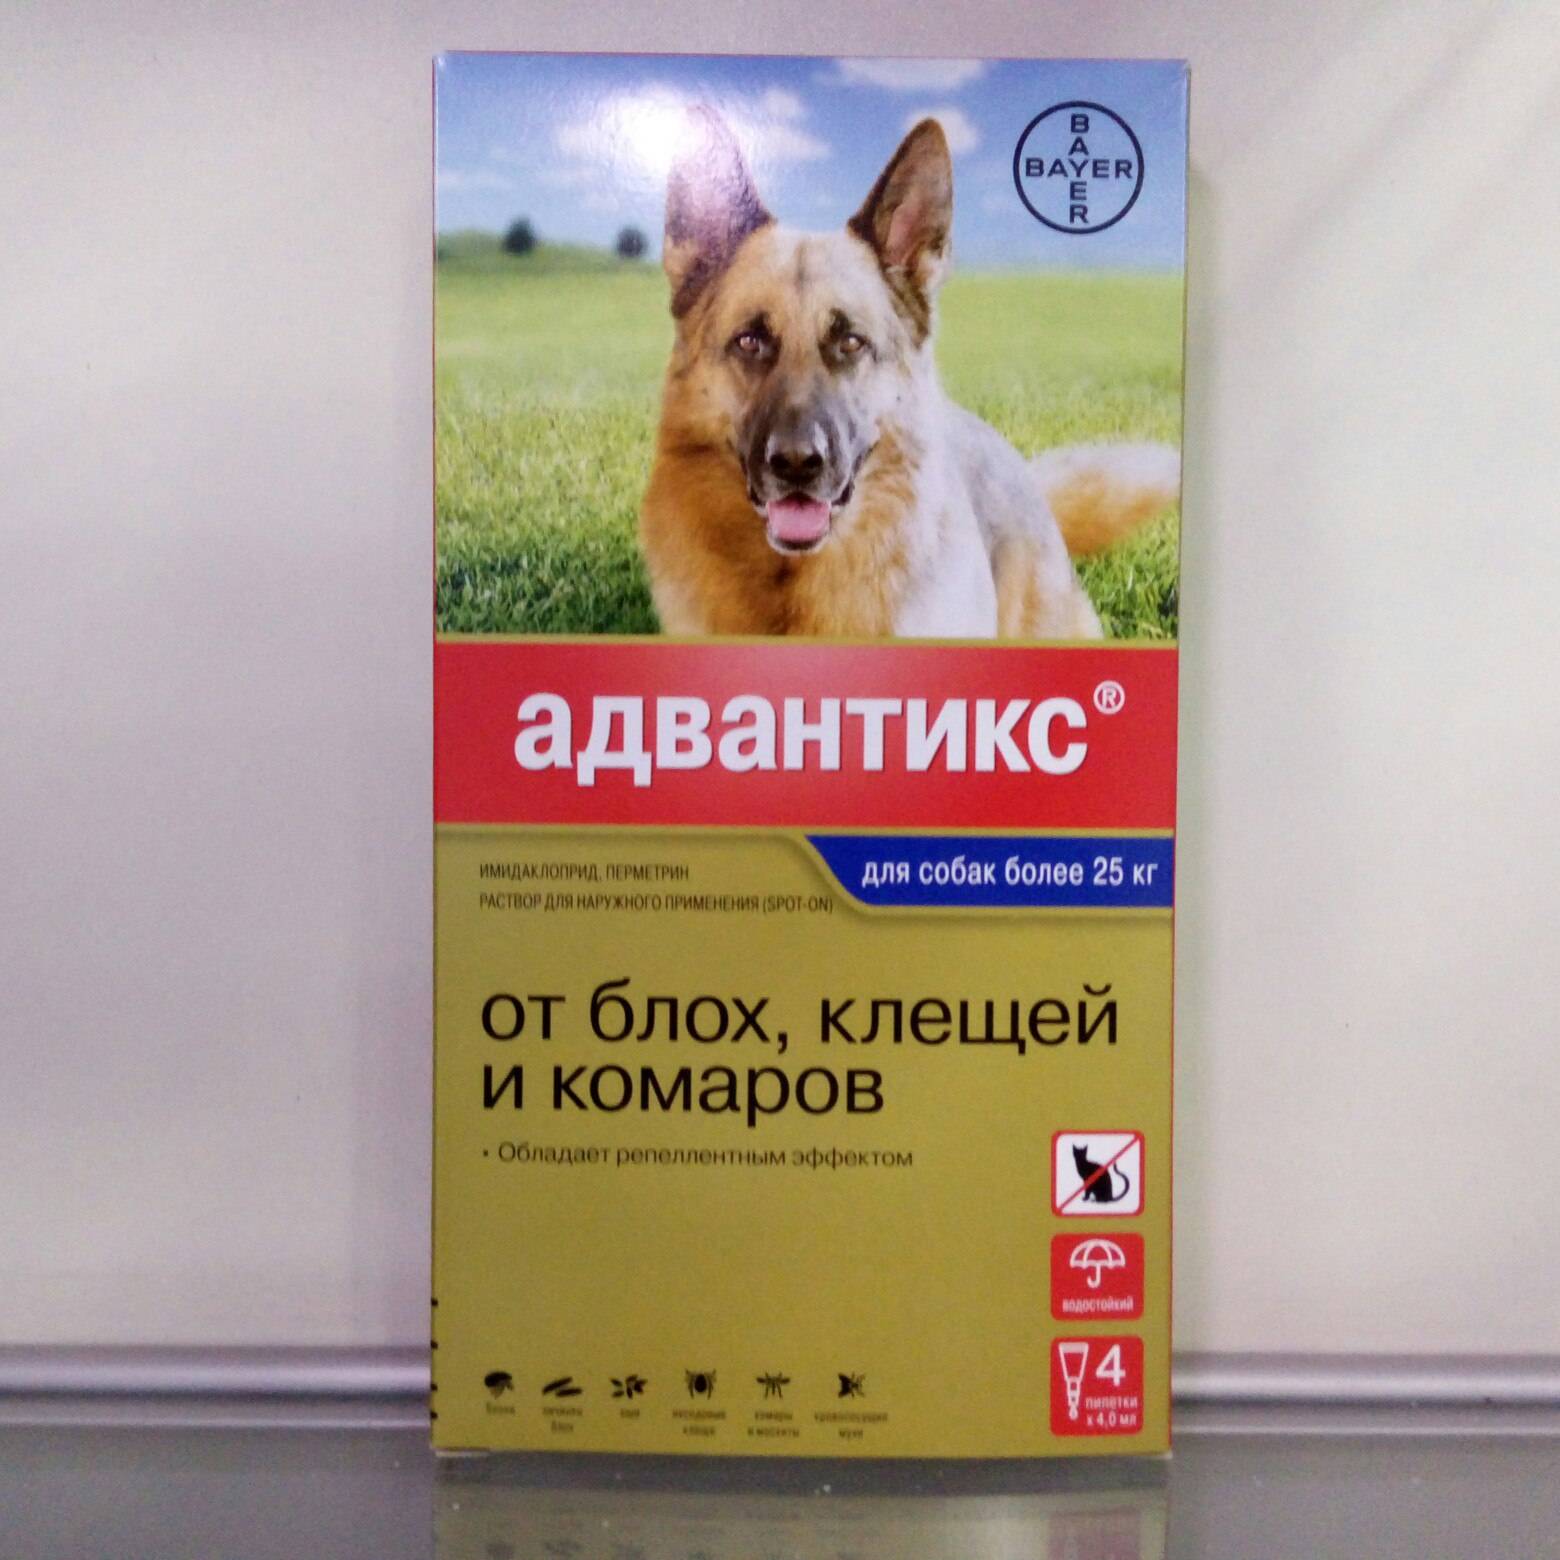 Описание и отзывы владельцев домашних животных о каплях от клещей для собак “адвантикс”